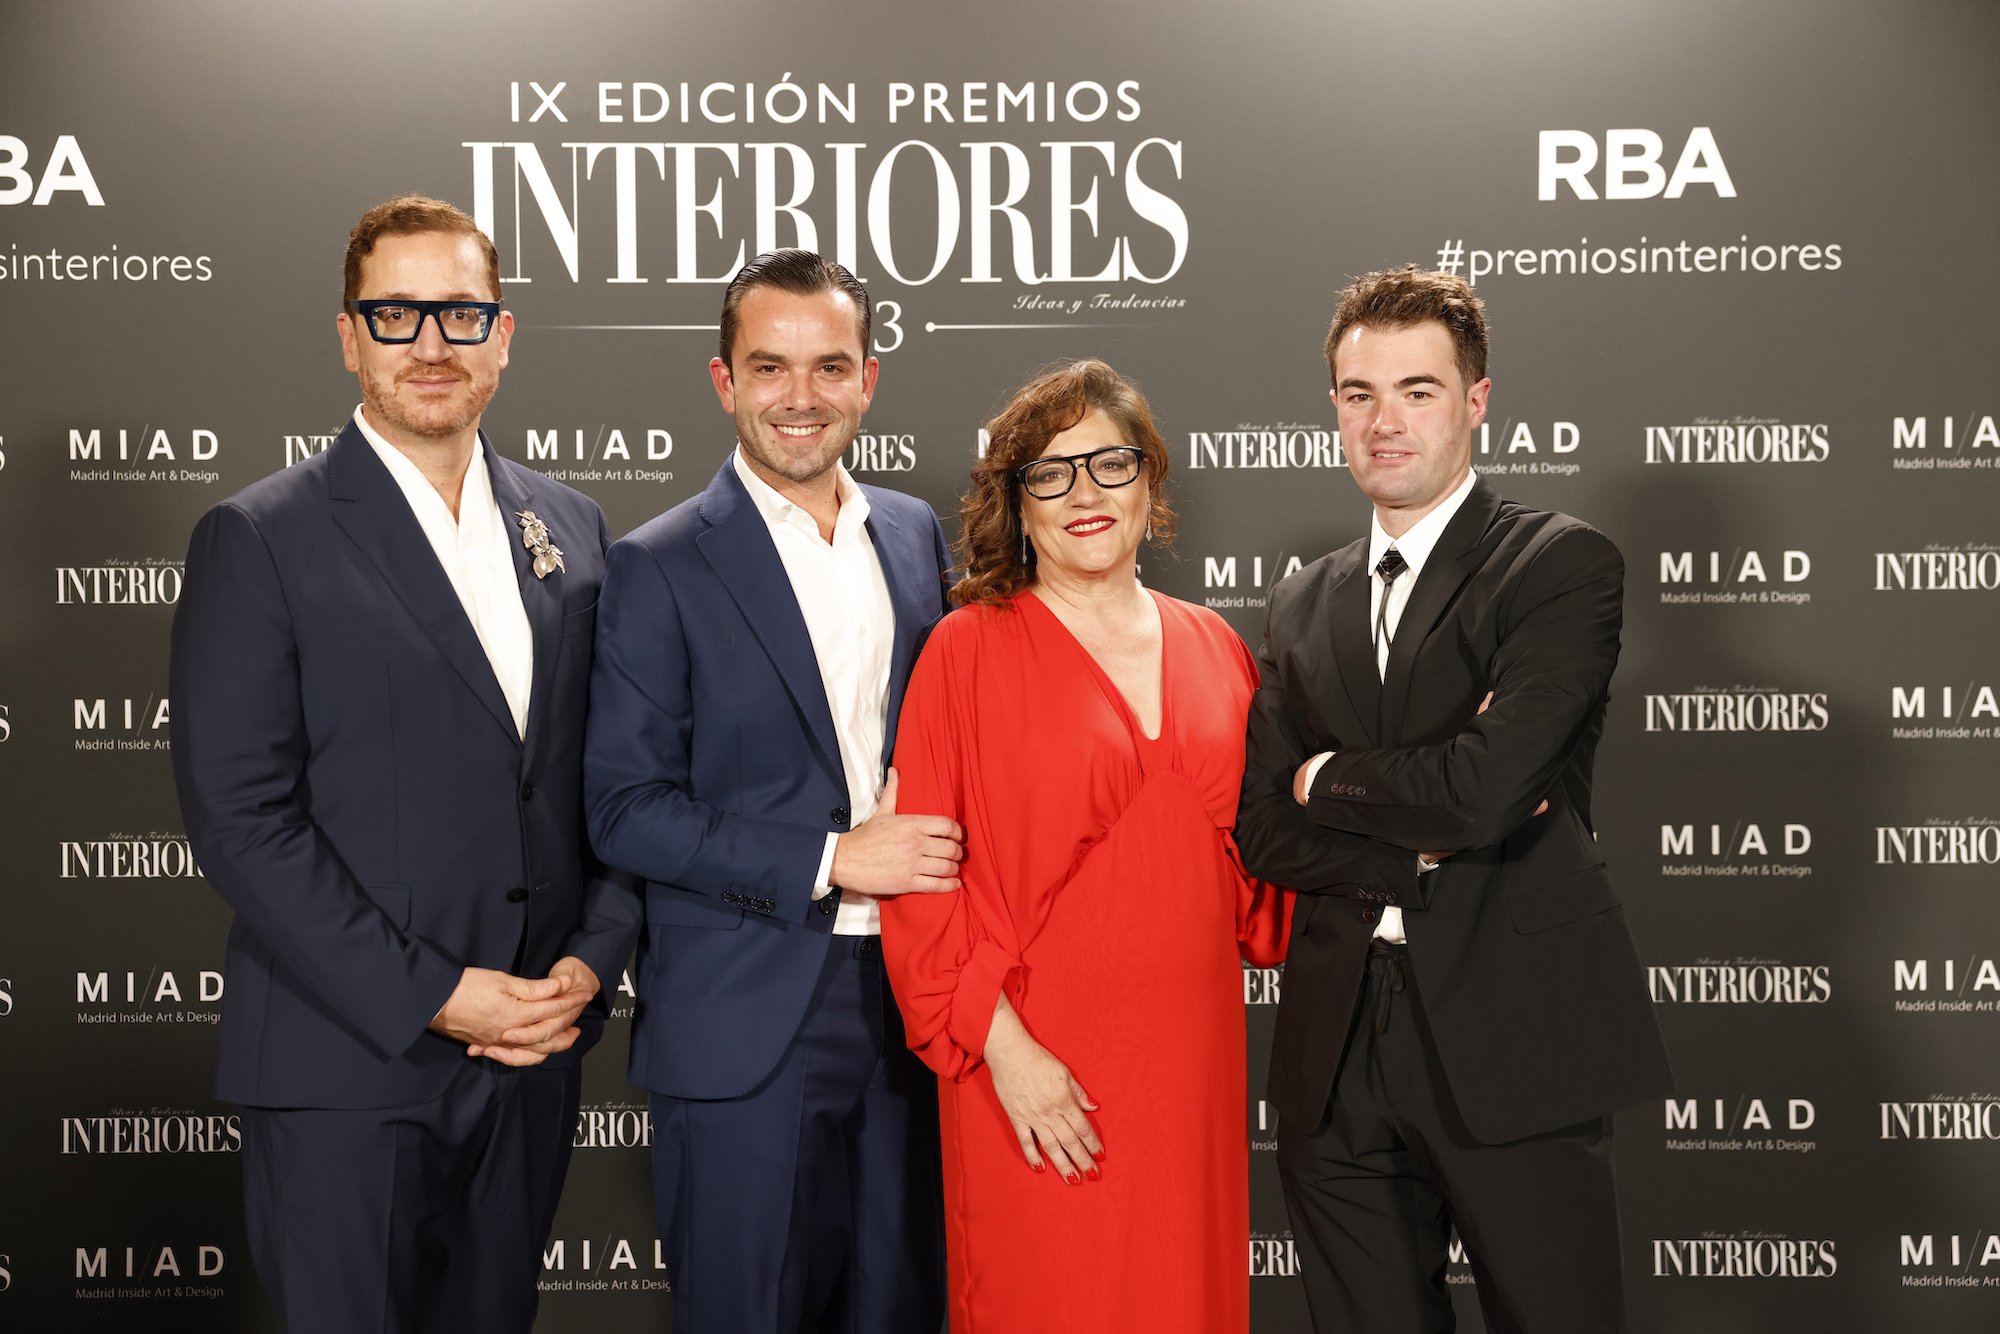 Interioristas Rau´l Martins; Manuel Espejo; Pilar Civis directora Revista Interiores y Sigffrido Serra